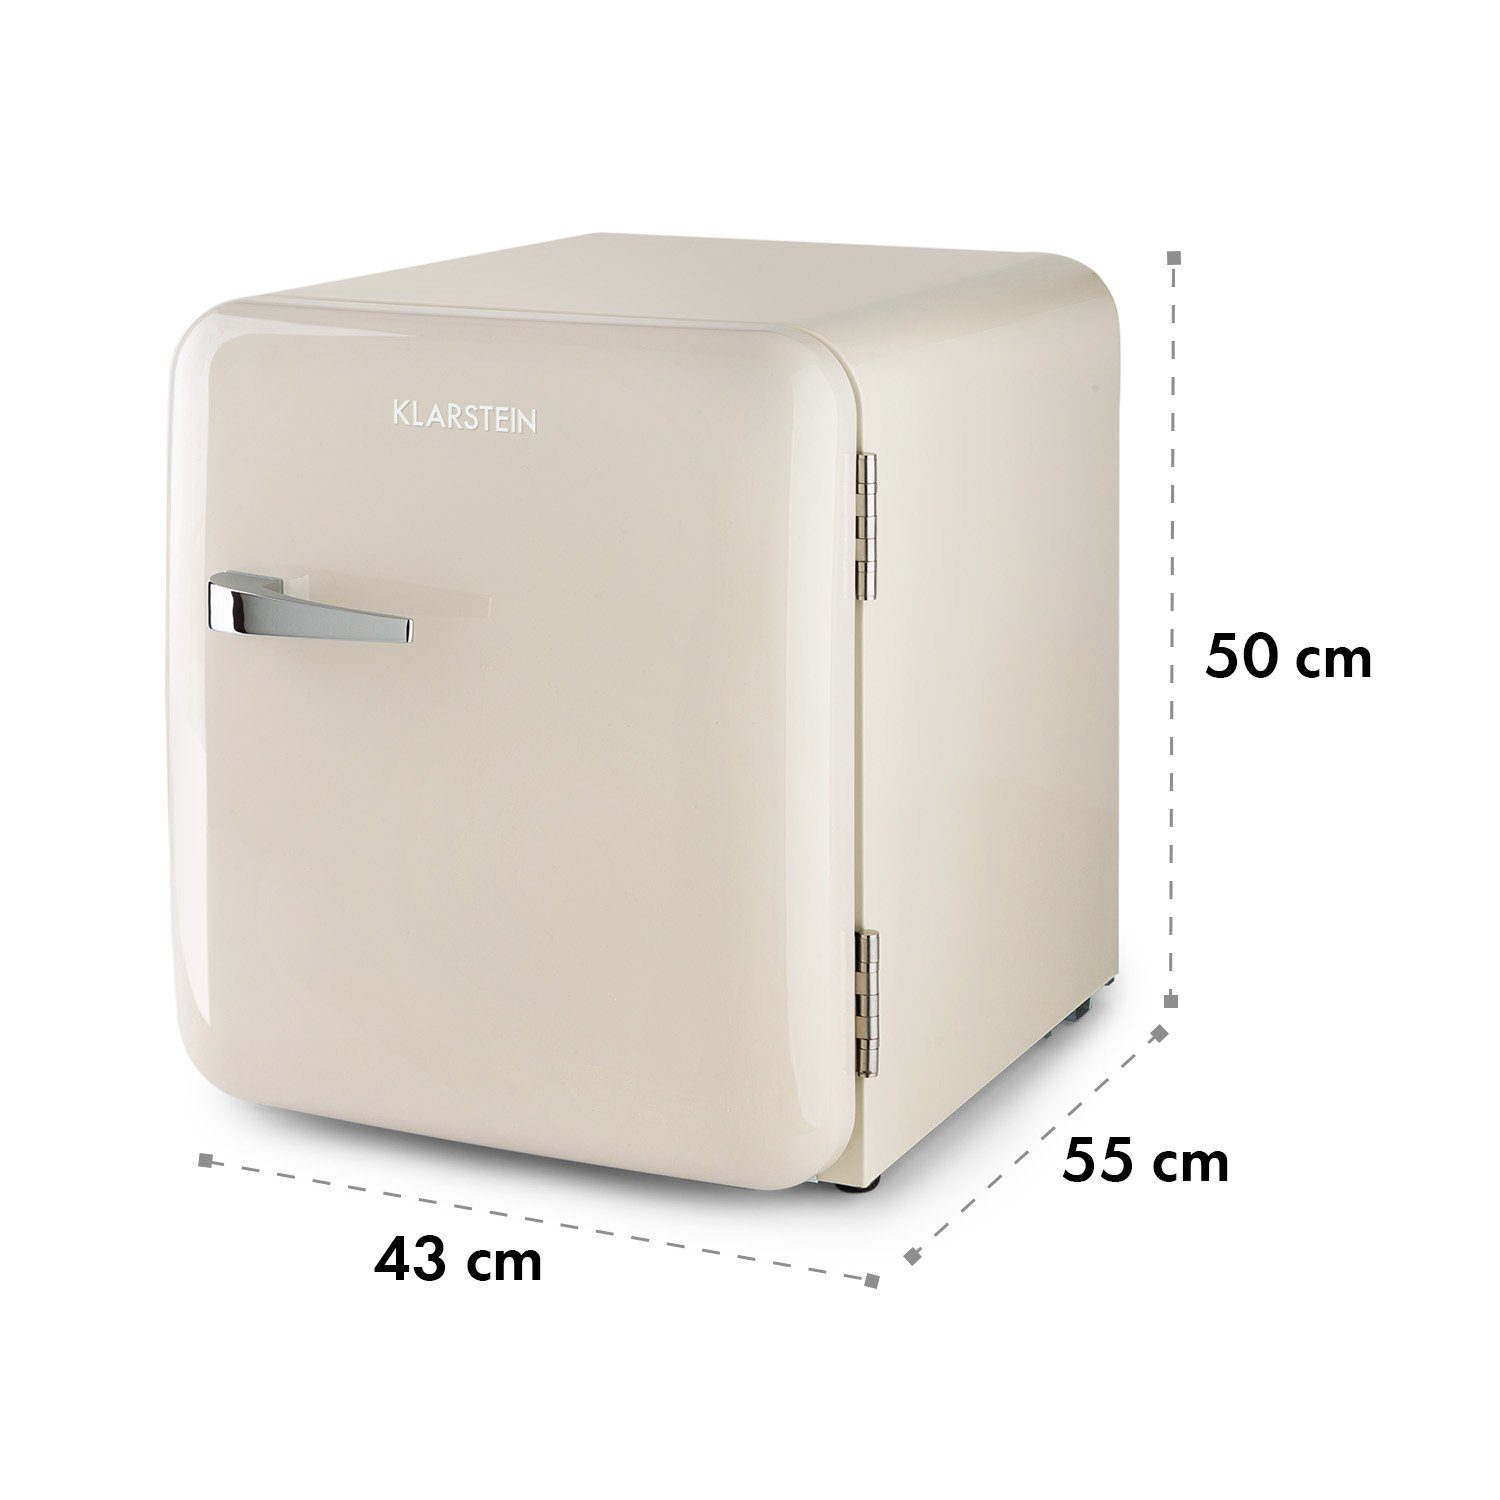 Klarstein Table Top Kühlschrank BC-46RD-creme 10035310A, 50 cm hoch, 44 cm breit, Hausbar Minikühlschrank mit Gefrierfach Getränkekühlschrank klein